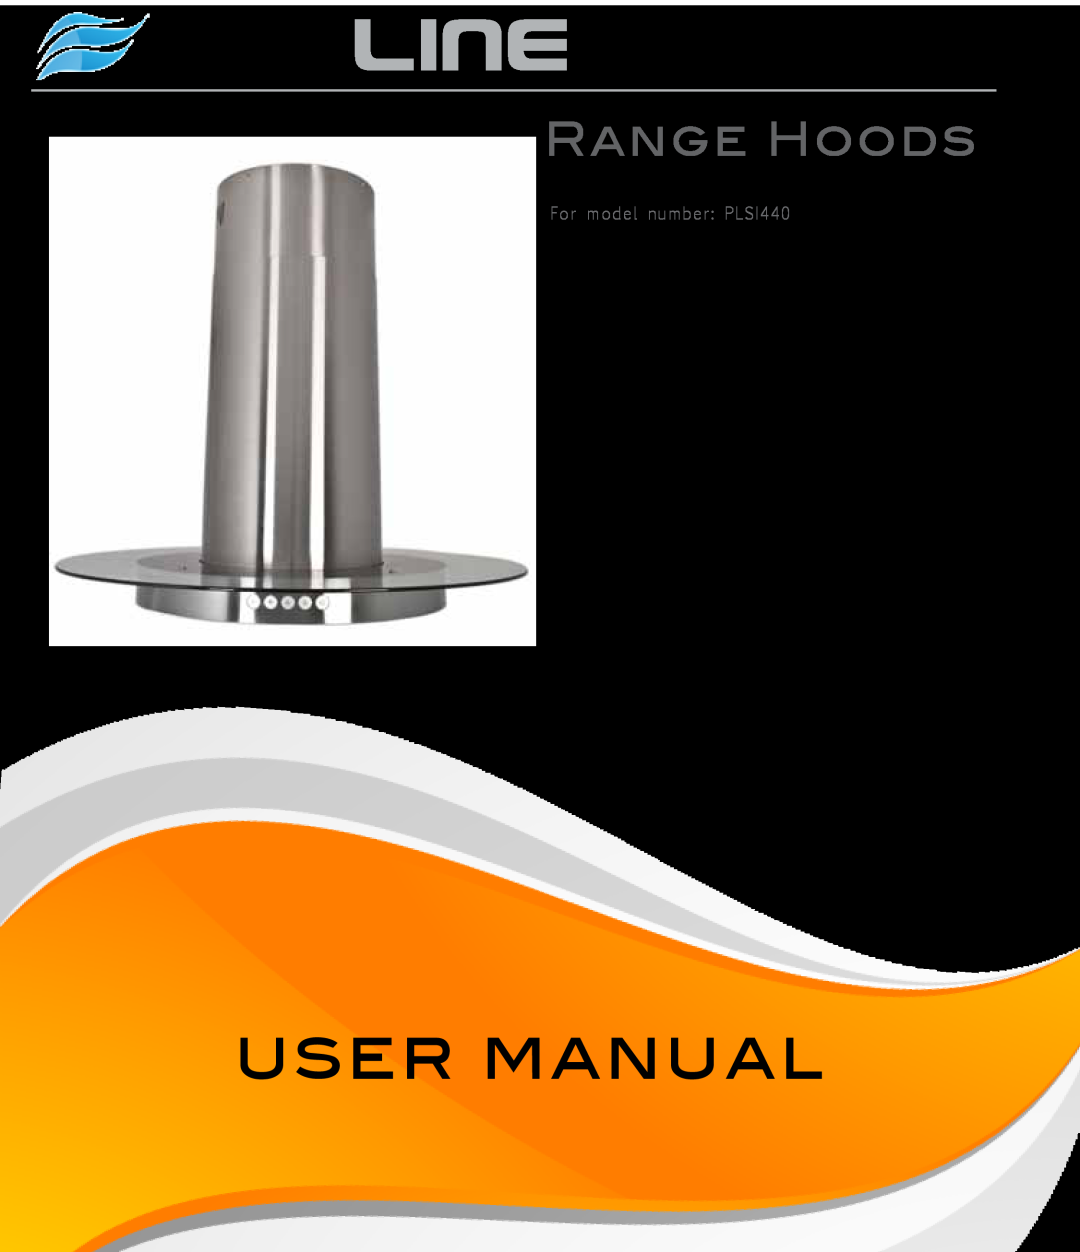 Proline PLS1440 user manual Proline, Range Hoods, For model number PLSI440 